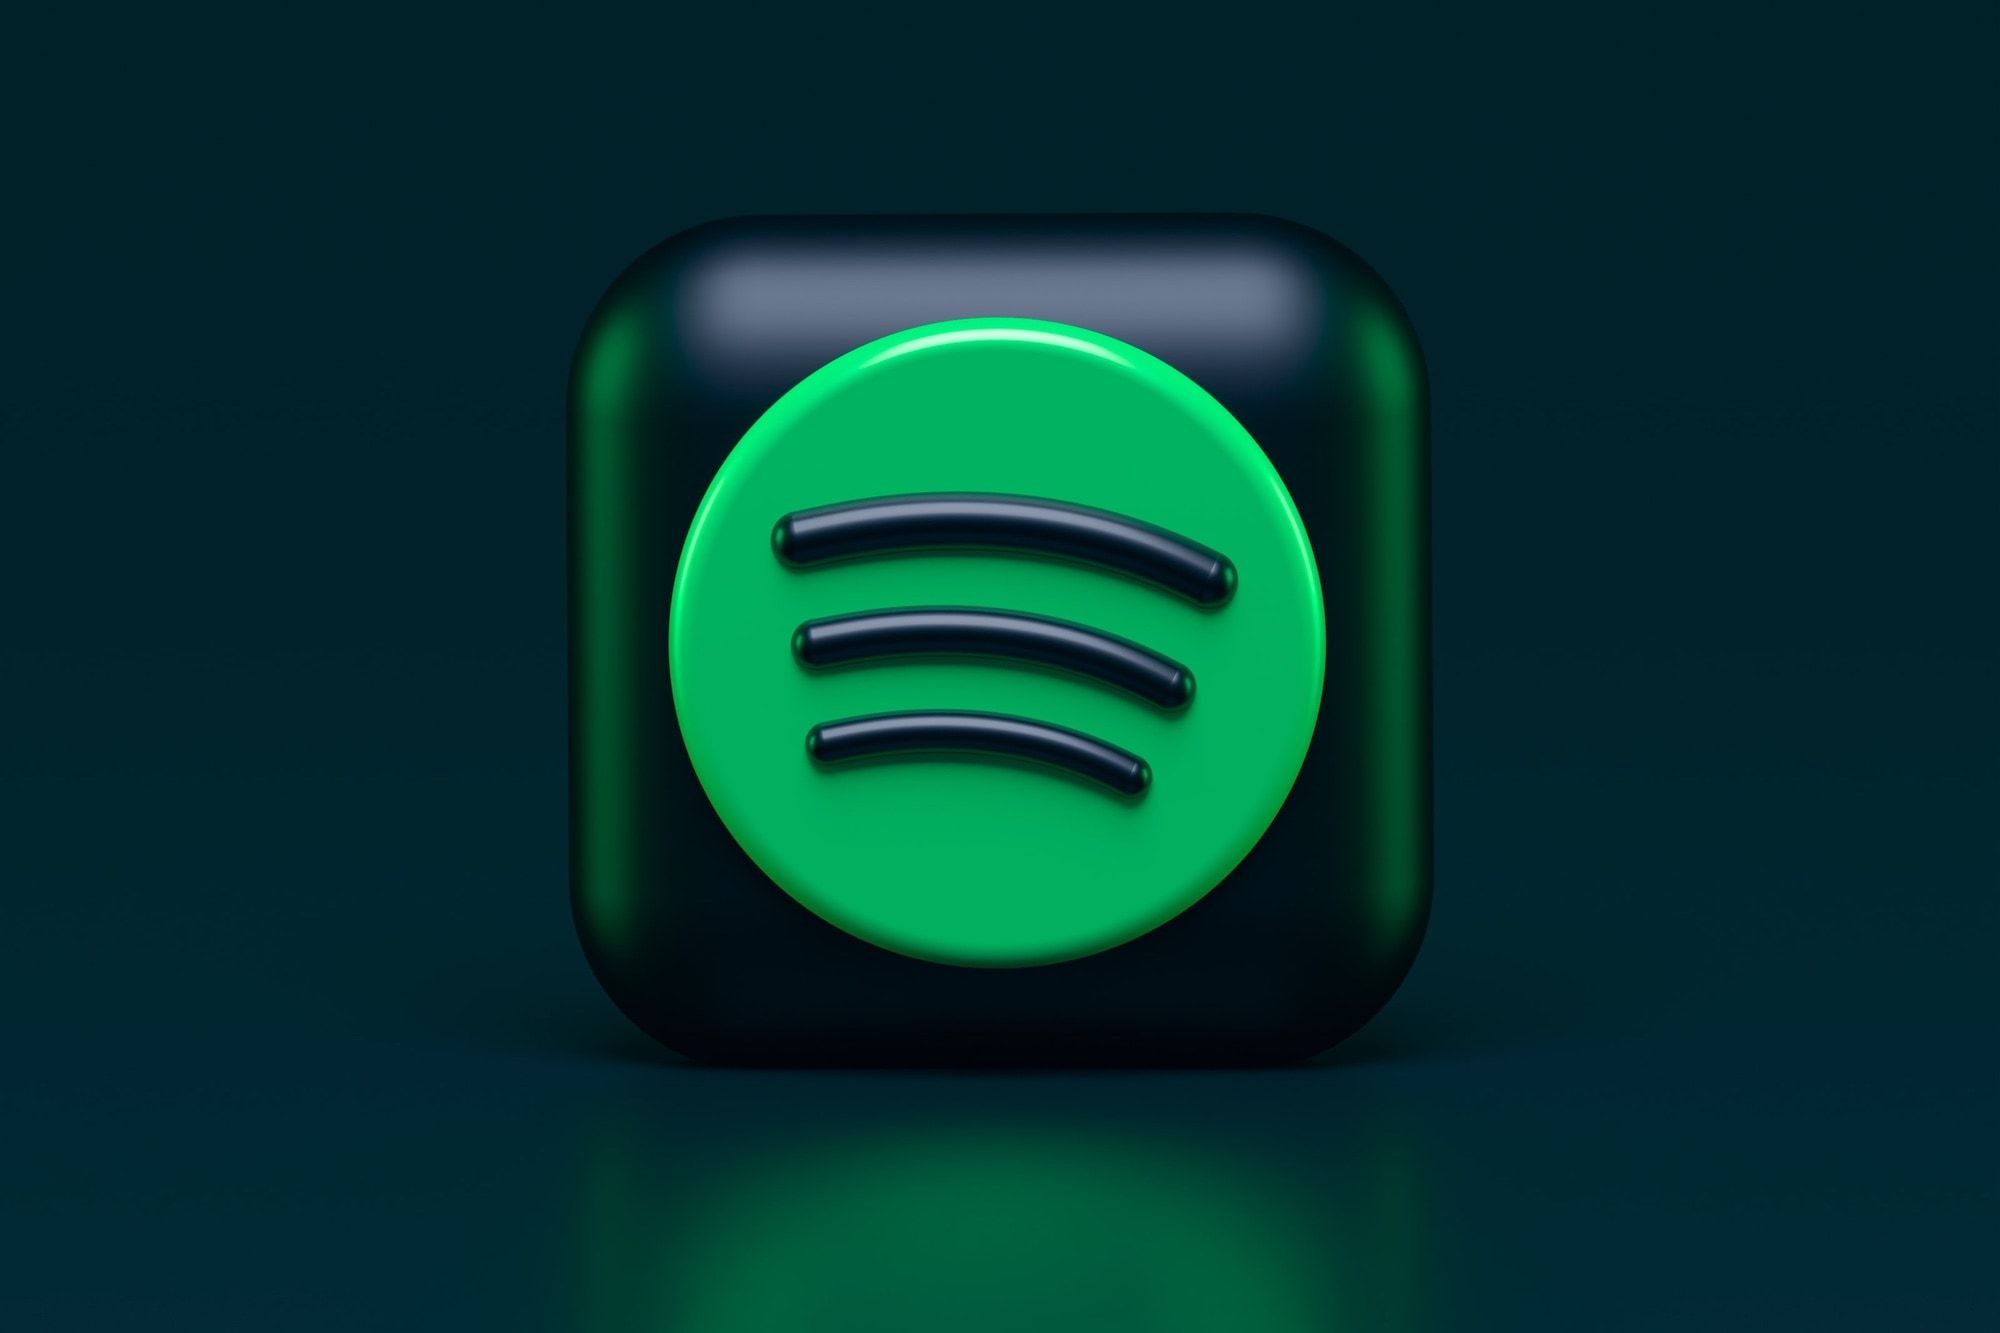 Logotipo 3D do Spotify contra um fundo preto